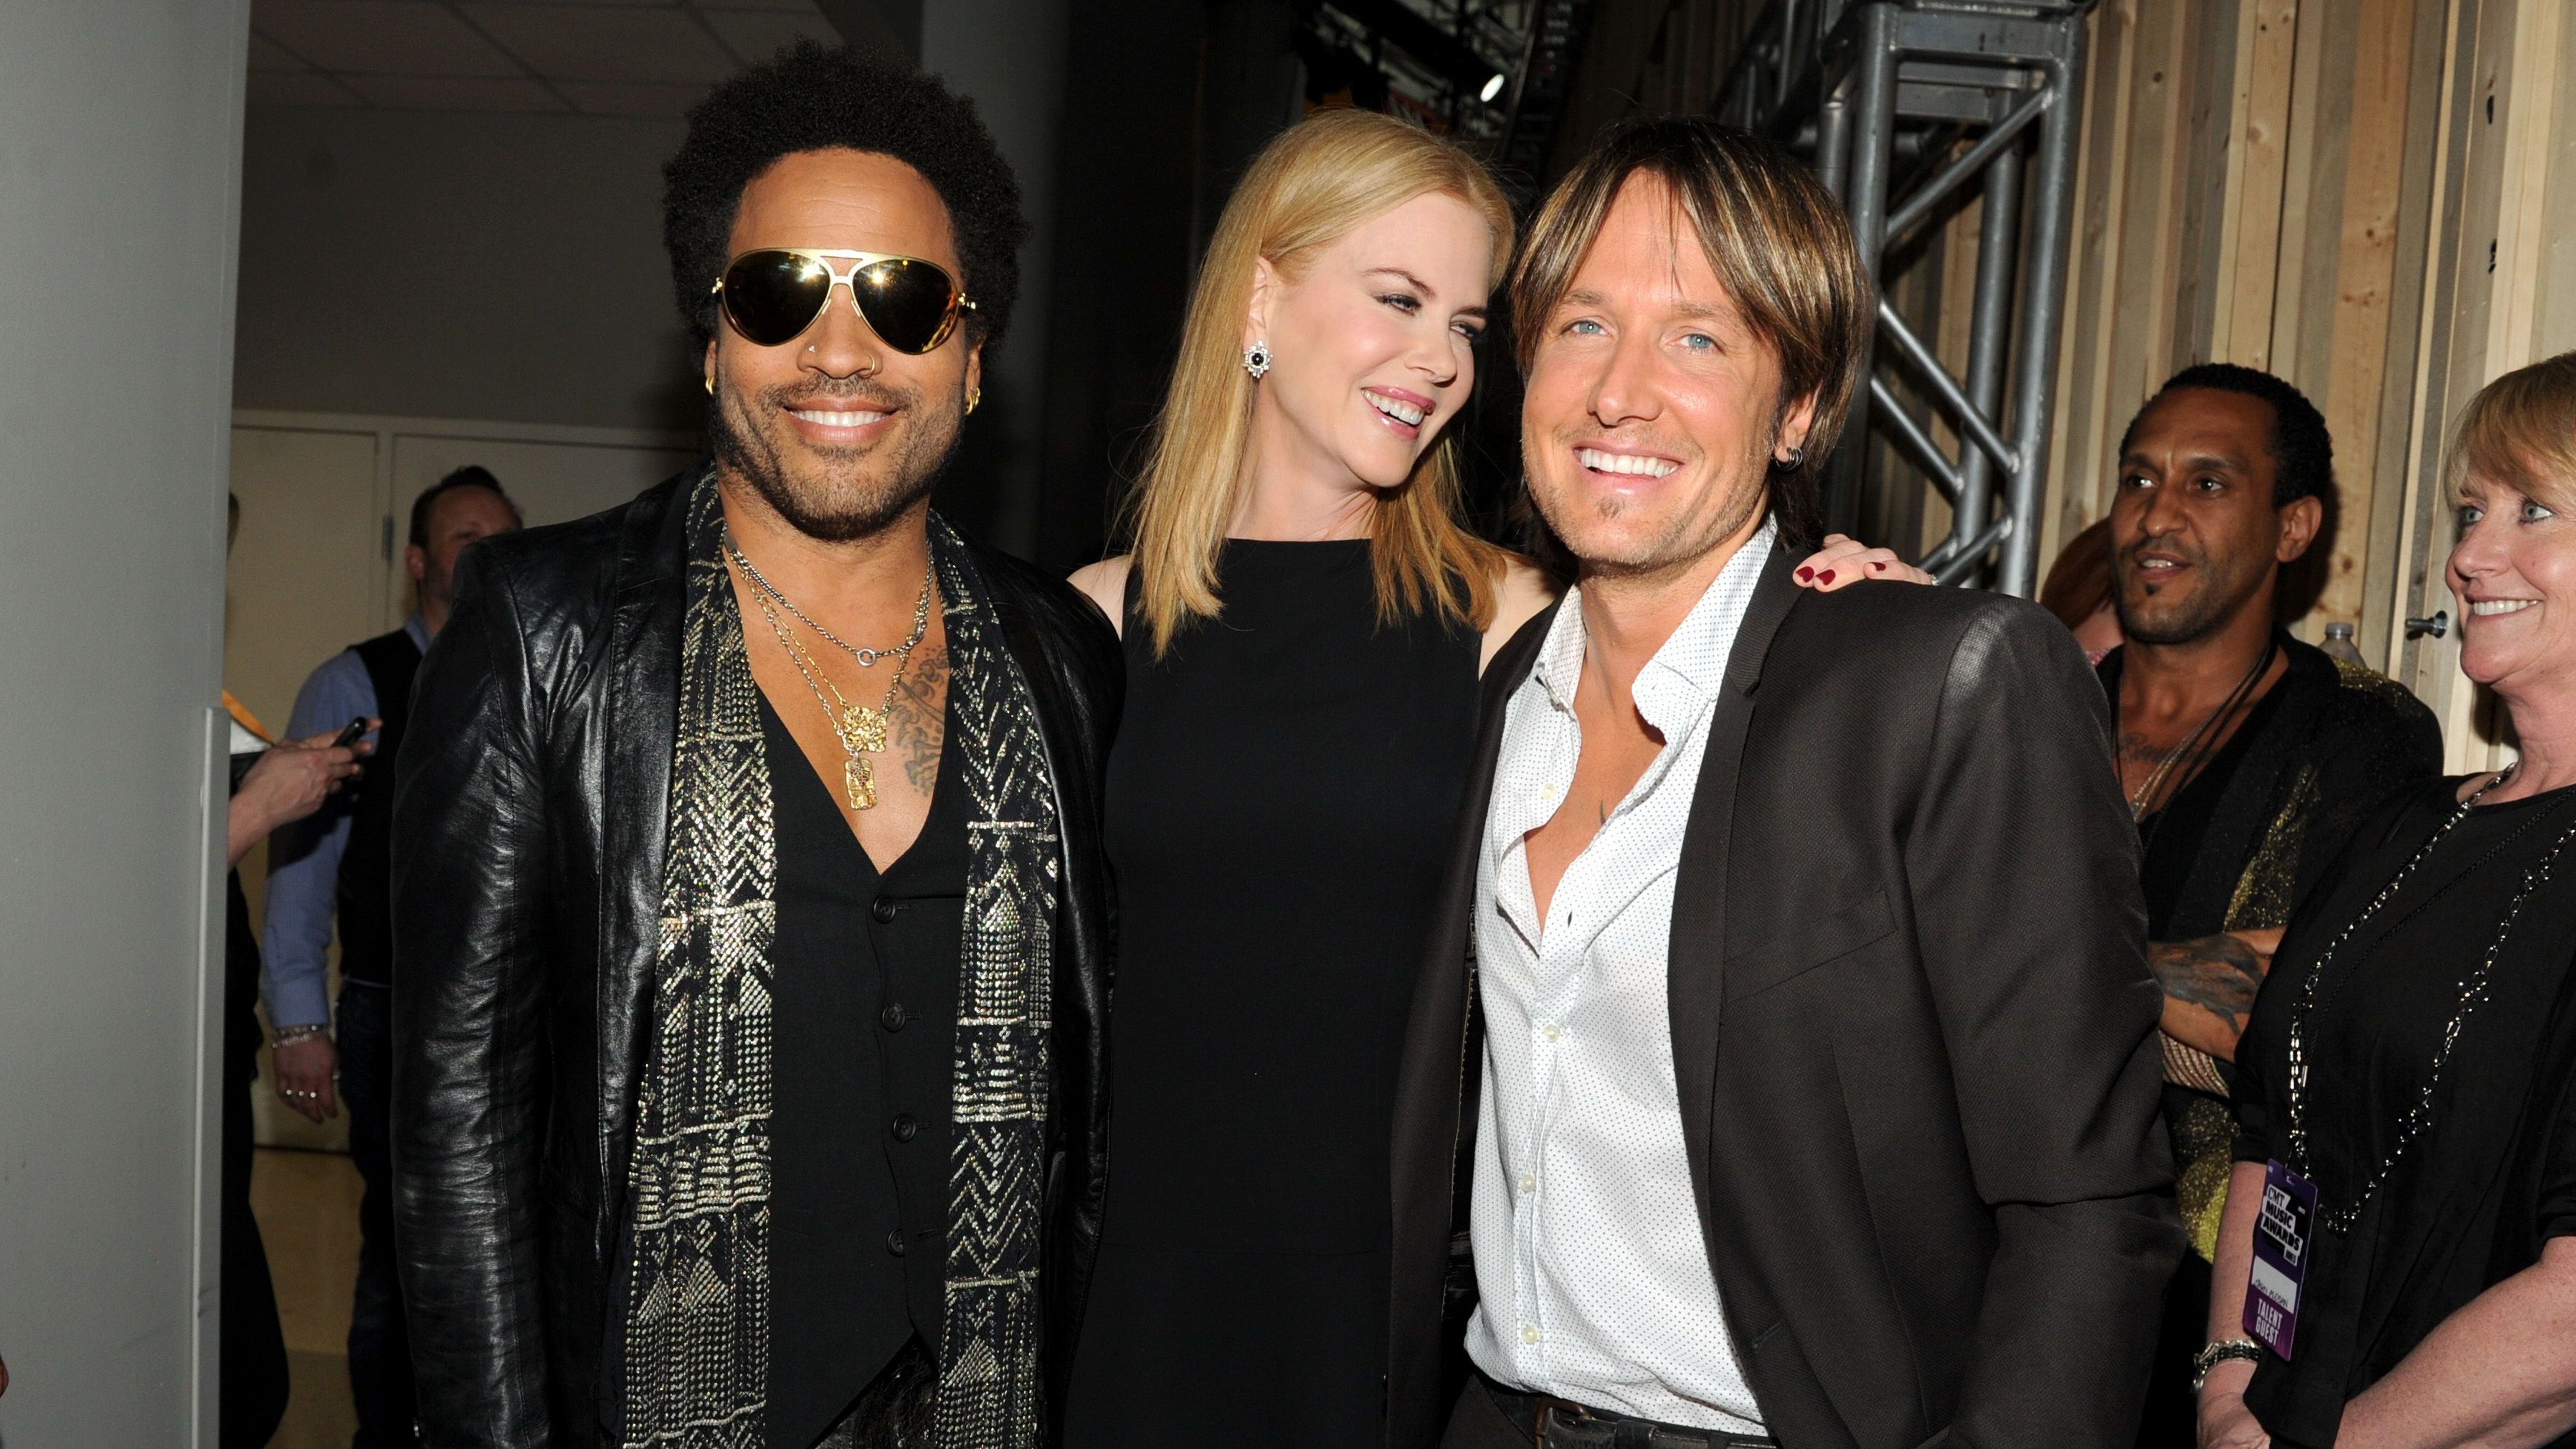 Sänger Lenny Kravitz datete Nicole Kidman im Jahr 2004, heute verstehen sich die beiden bestens -&nbsp; auch im Dreierpack mit Keith Urban)